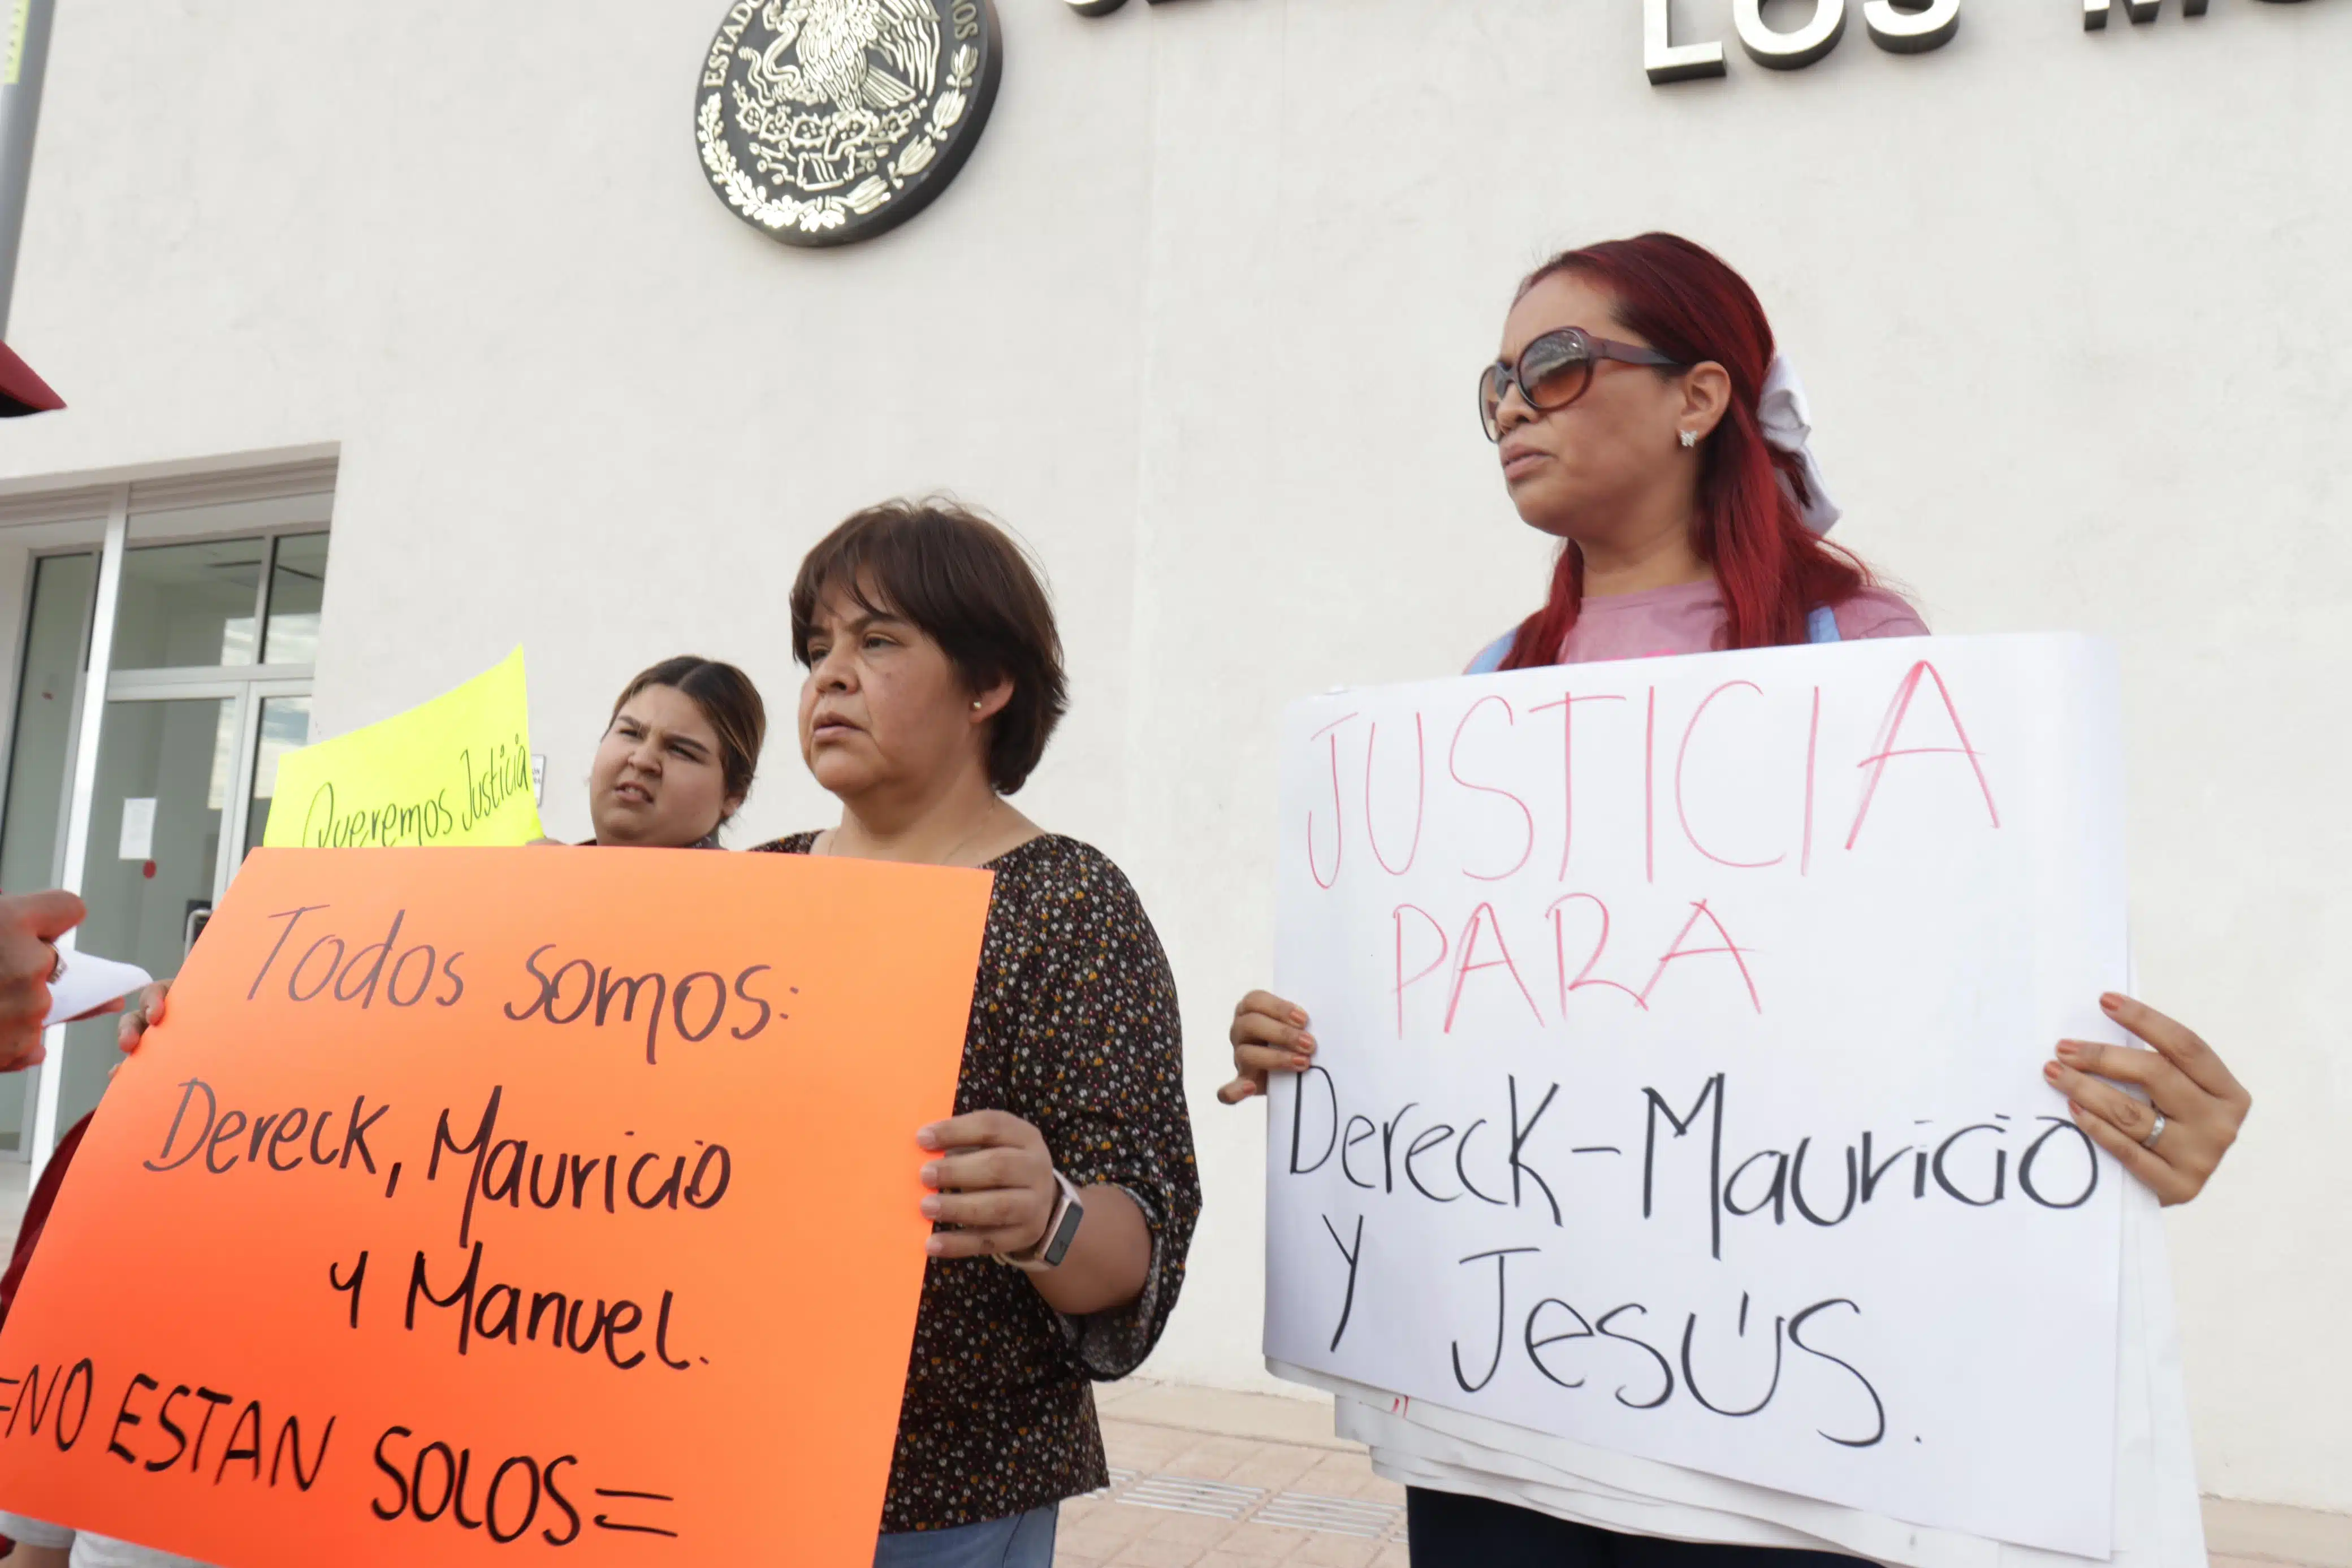 Manifestación en el Centro de Justicia Penal de Los Mochis para pedir la liberación de tres jovenes que fueron detenididos en Sonora presuntamente transportando extranjeros